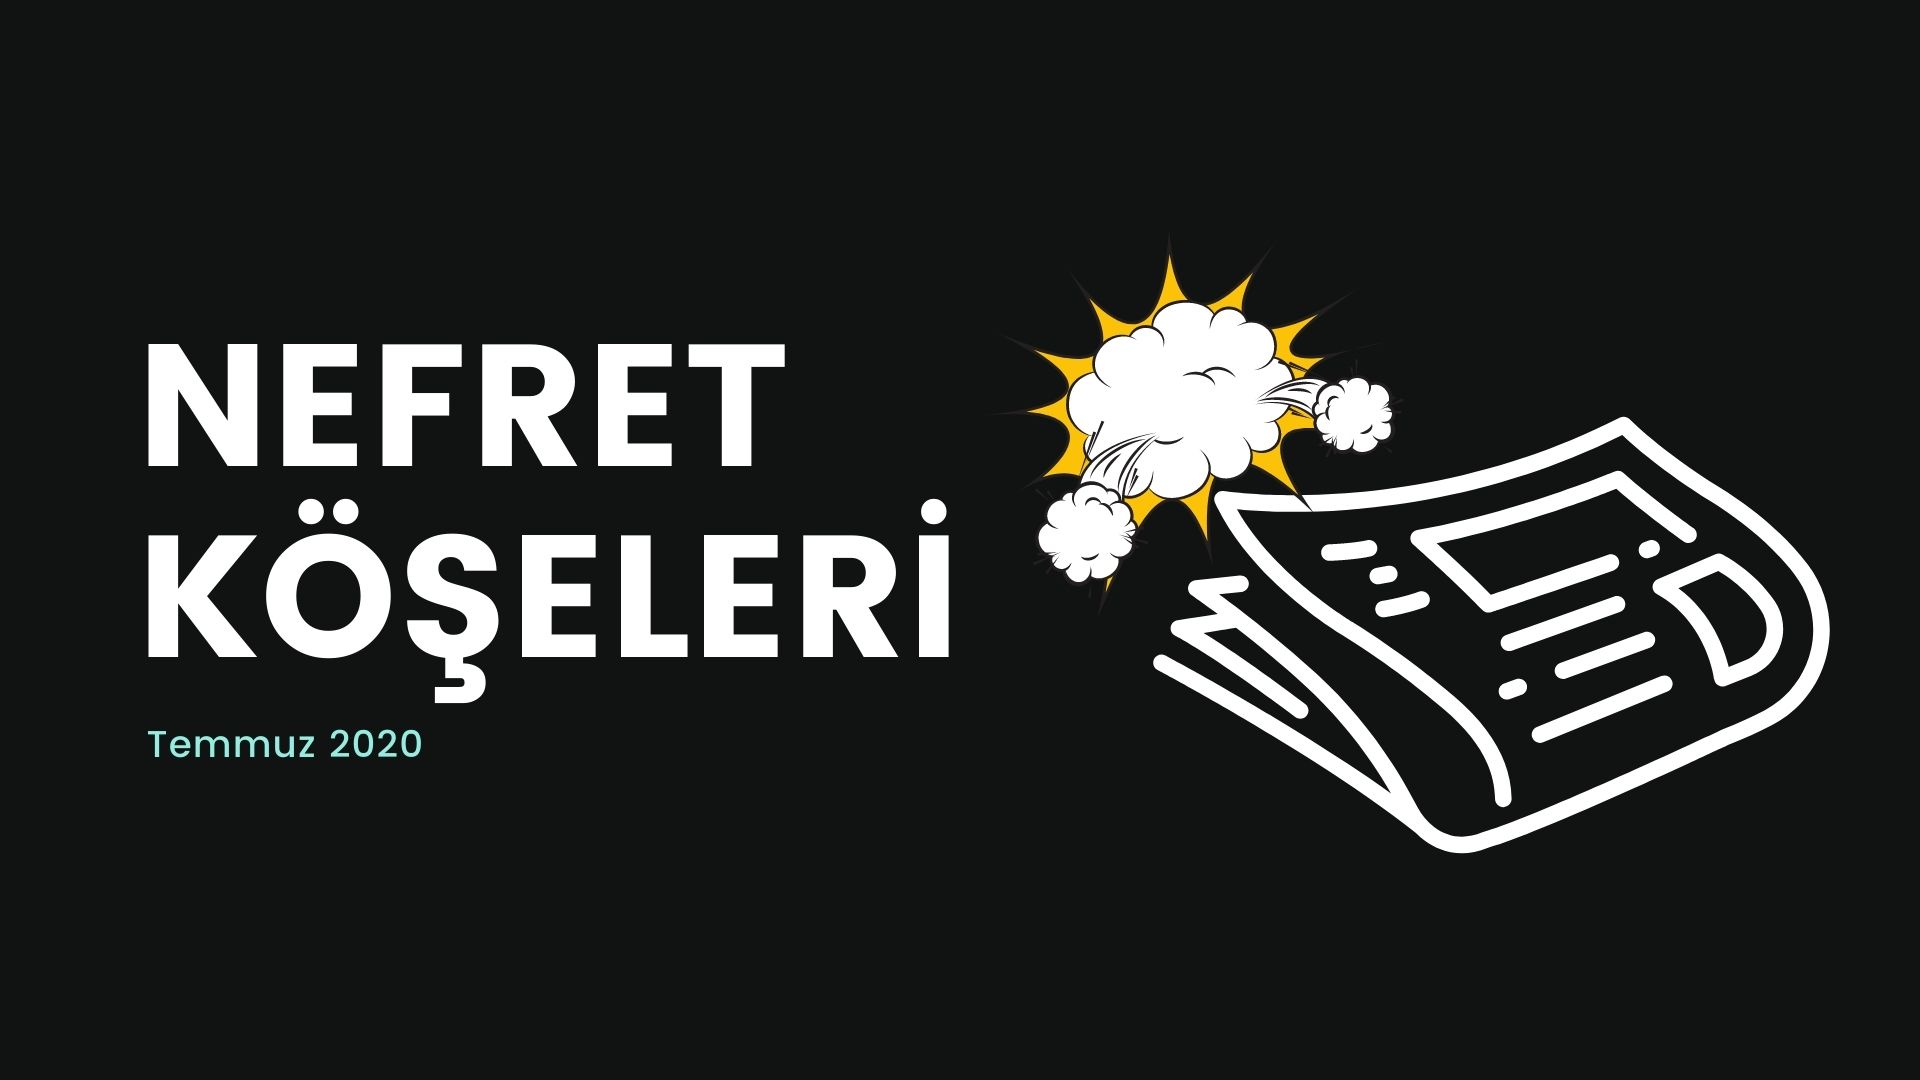 Temmuz’un nefret “köşe”lerinde hedef İstanbul Sözleşmesi Kaos GL - LGBTİ+ Haber Portalı